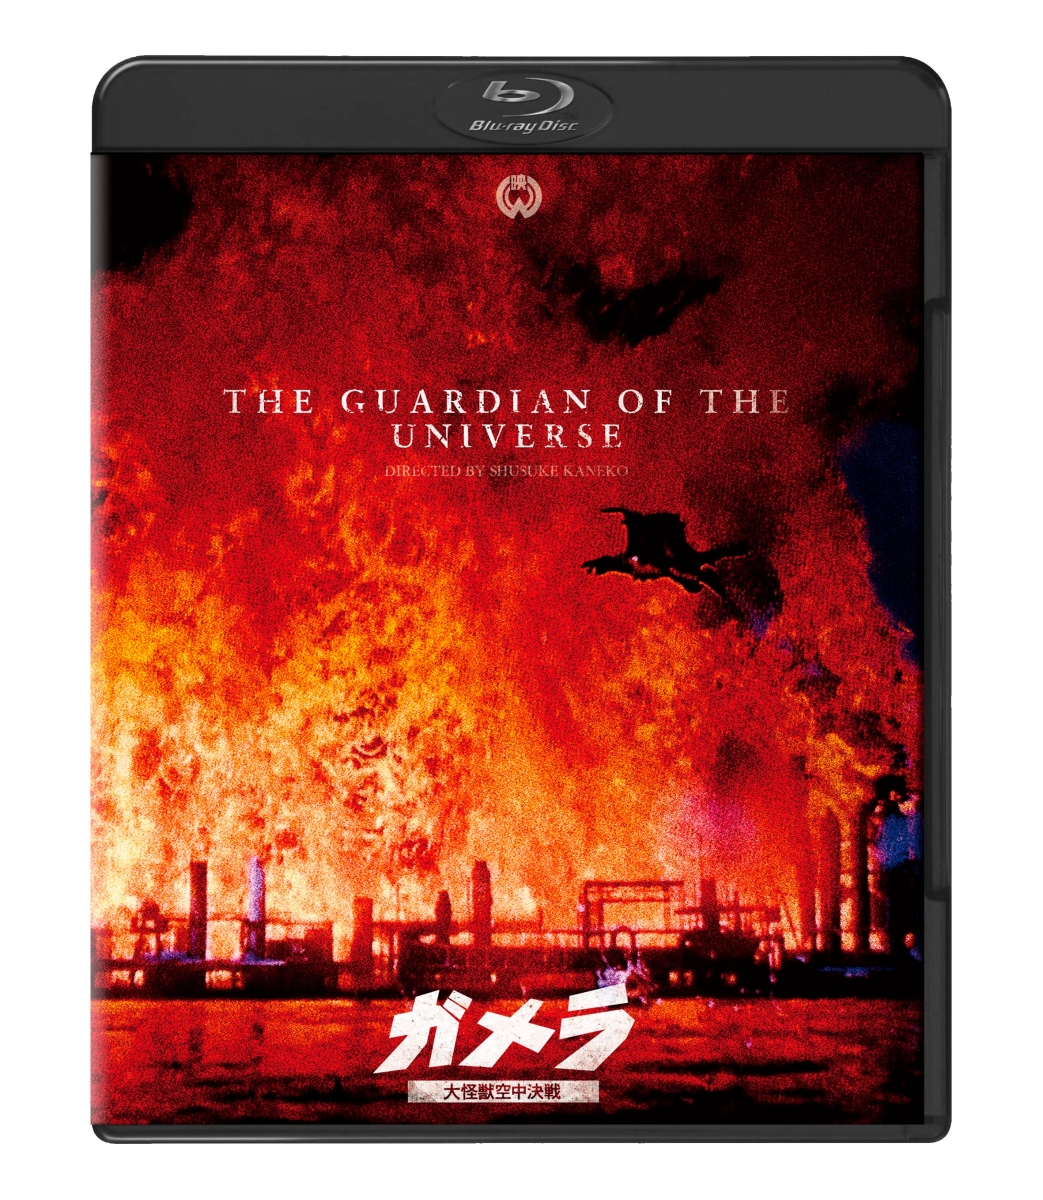 『ガメラ 大怪獣空中決戦』 4Kデジタル復元版Blu-ray【Blu-ray】画像